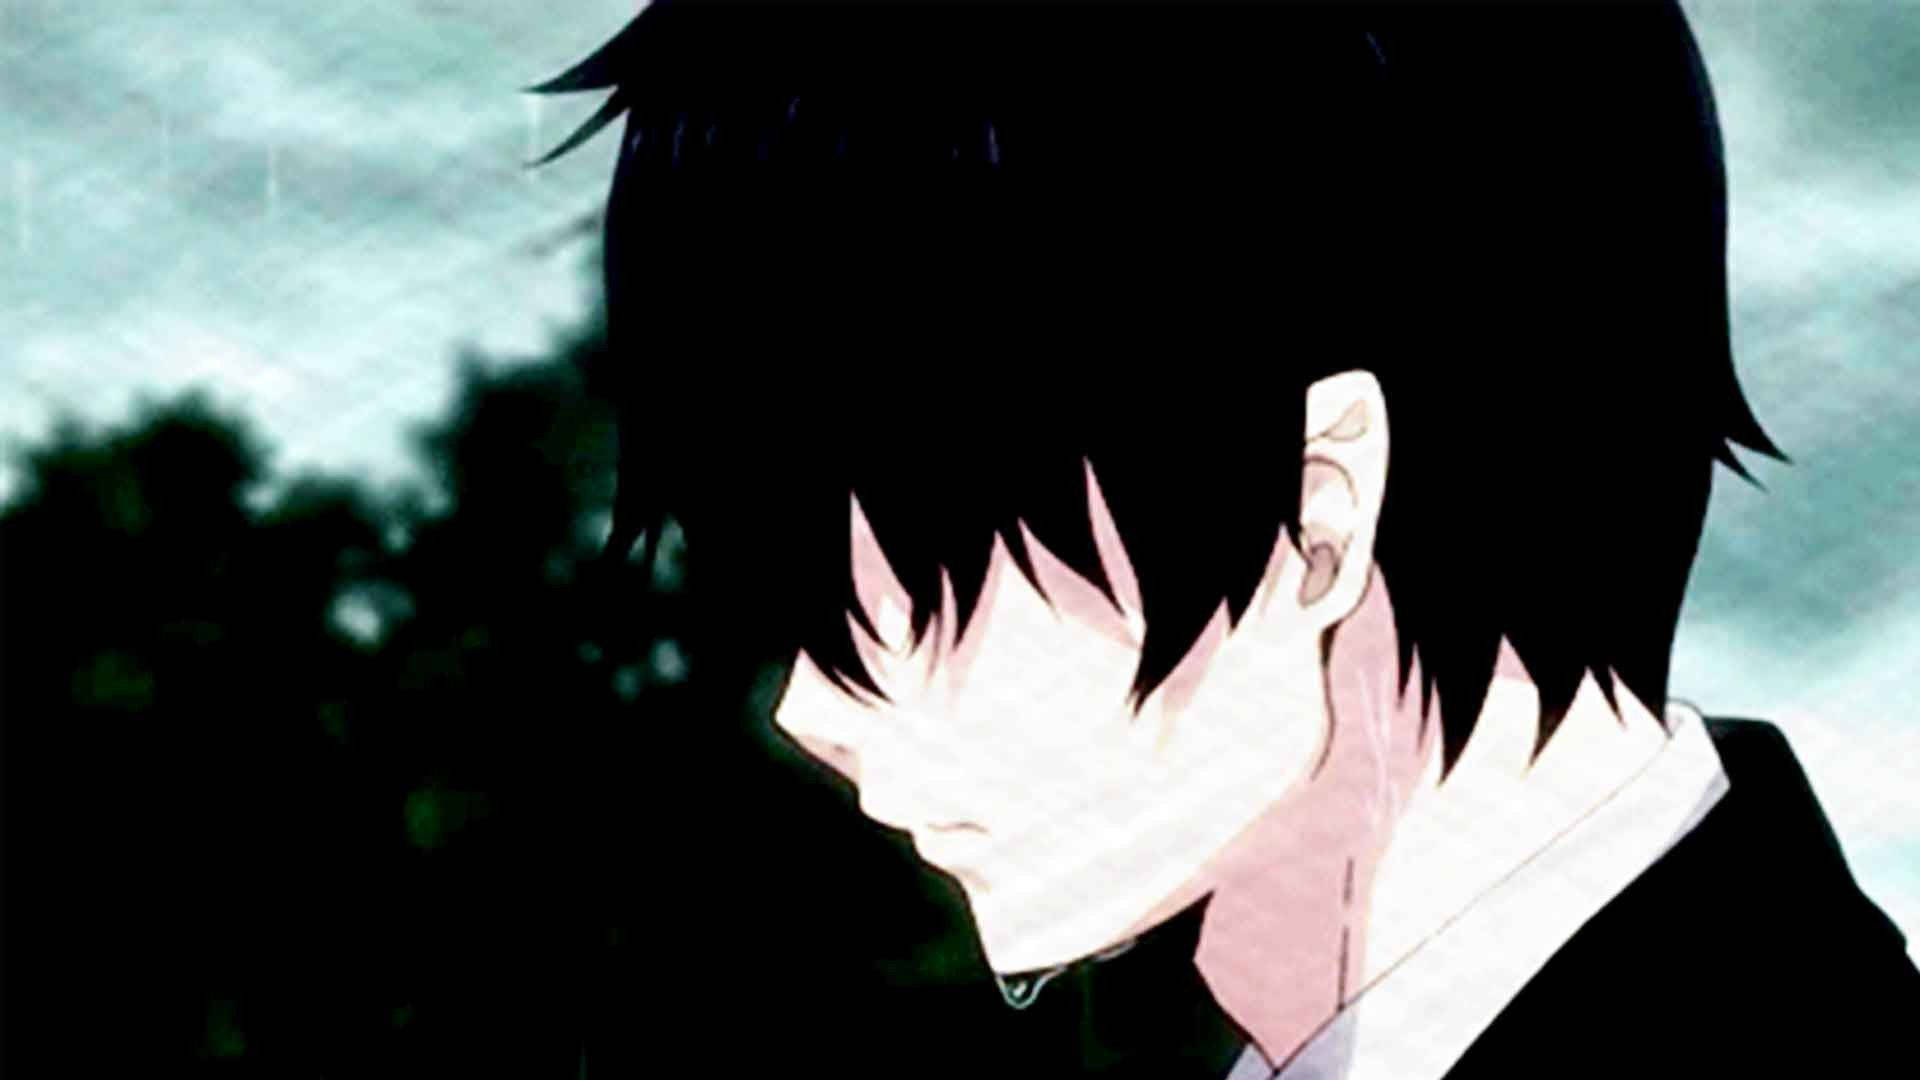 Alone Sad Anime Boys With Tears